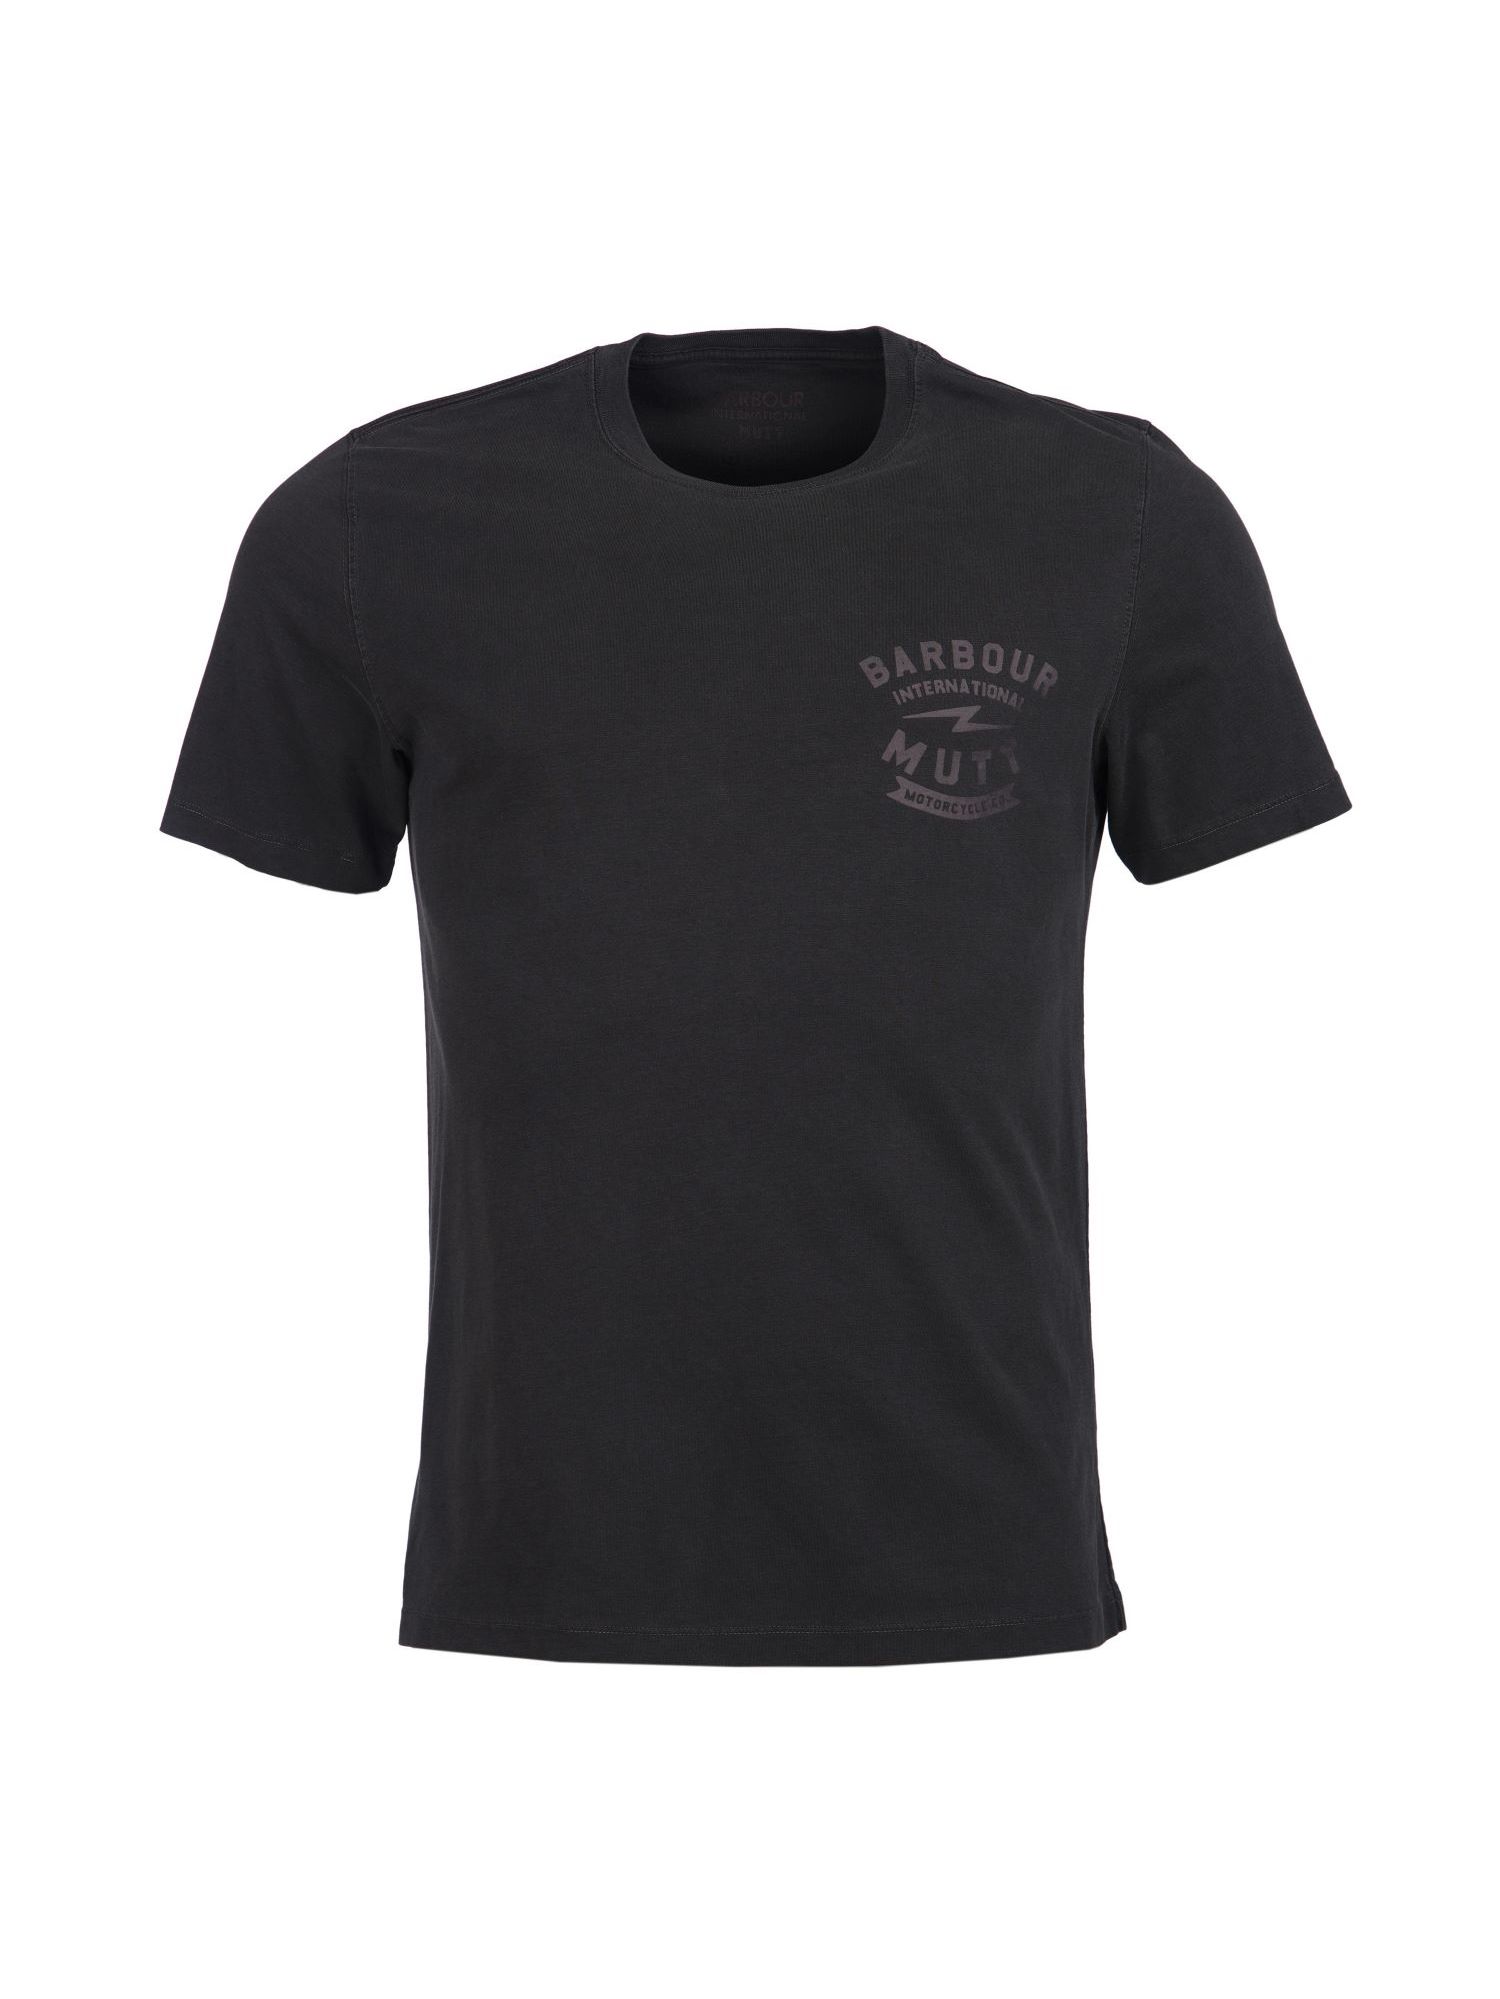 Barbour International X Mutt T-Shirt in Black | Dapper Street